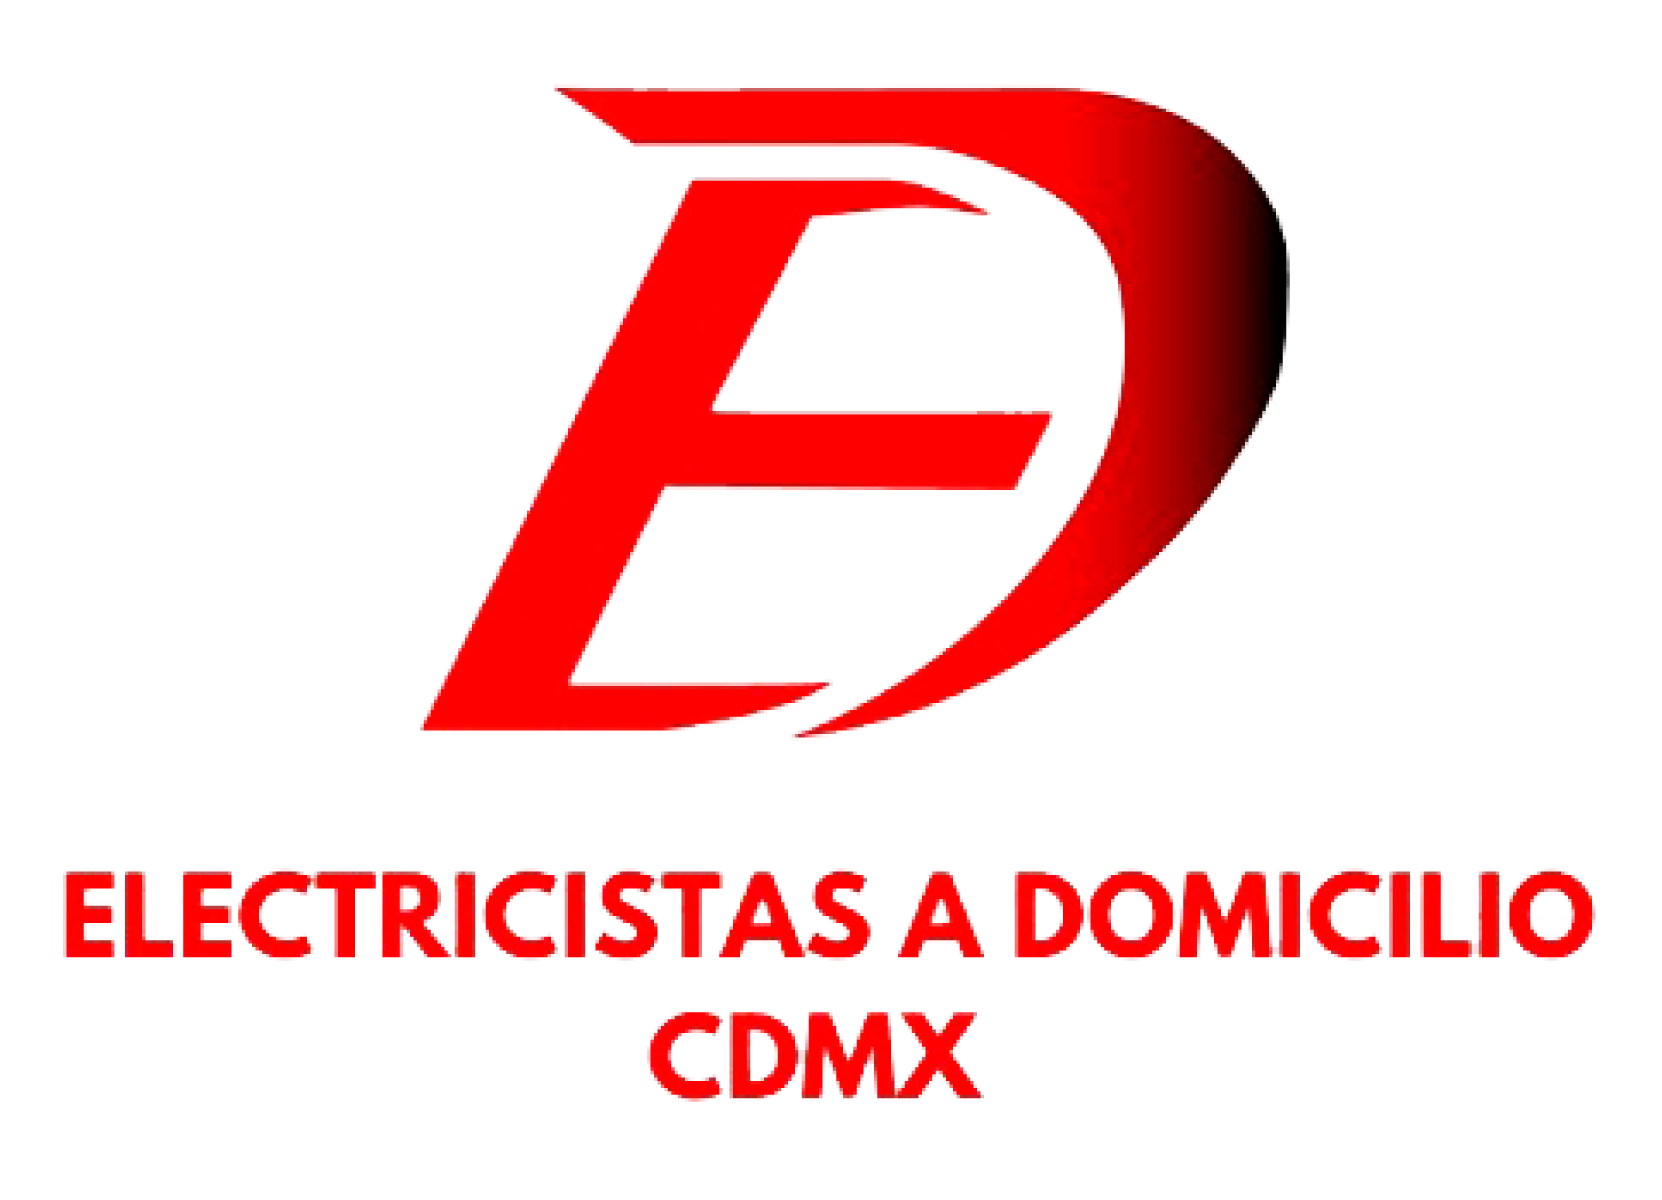 ELECTRICISTAS A DOMICILIO CDMX